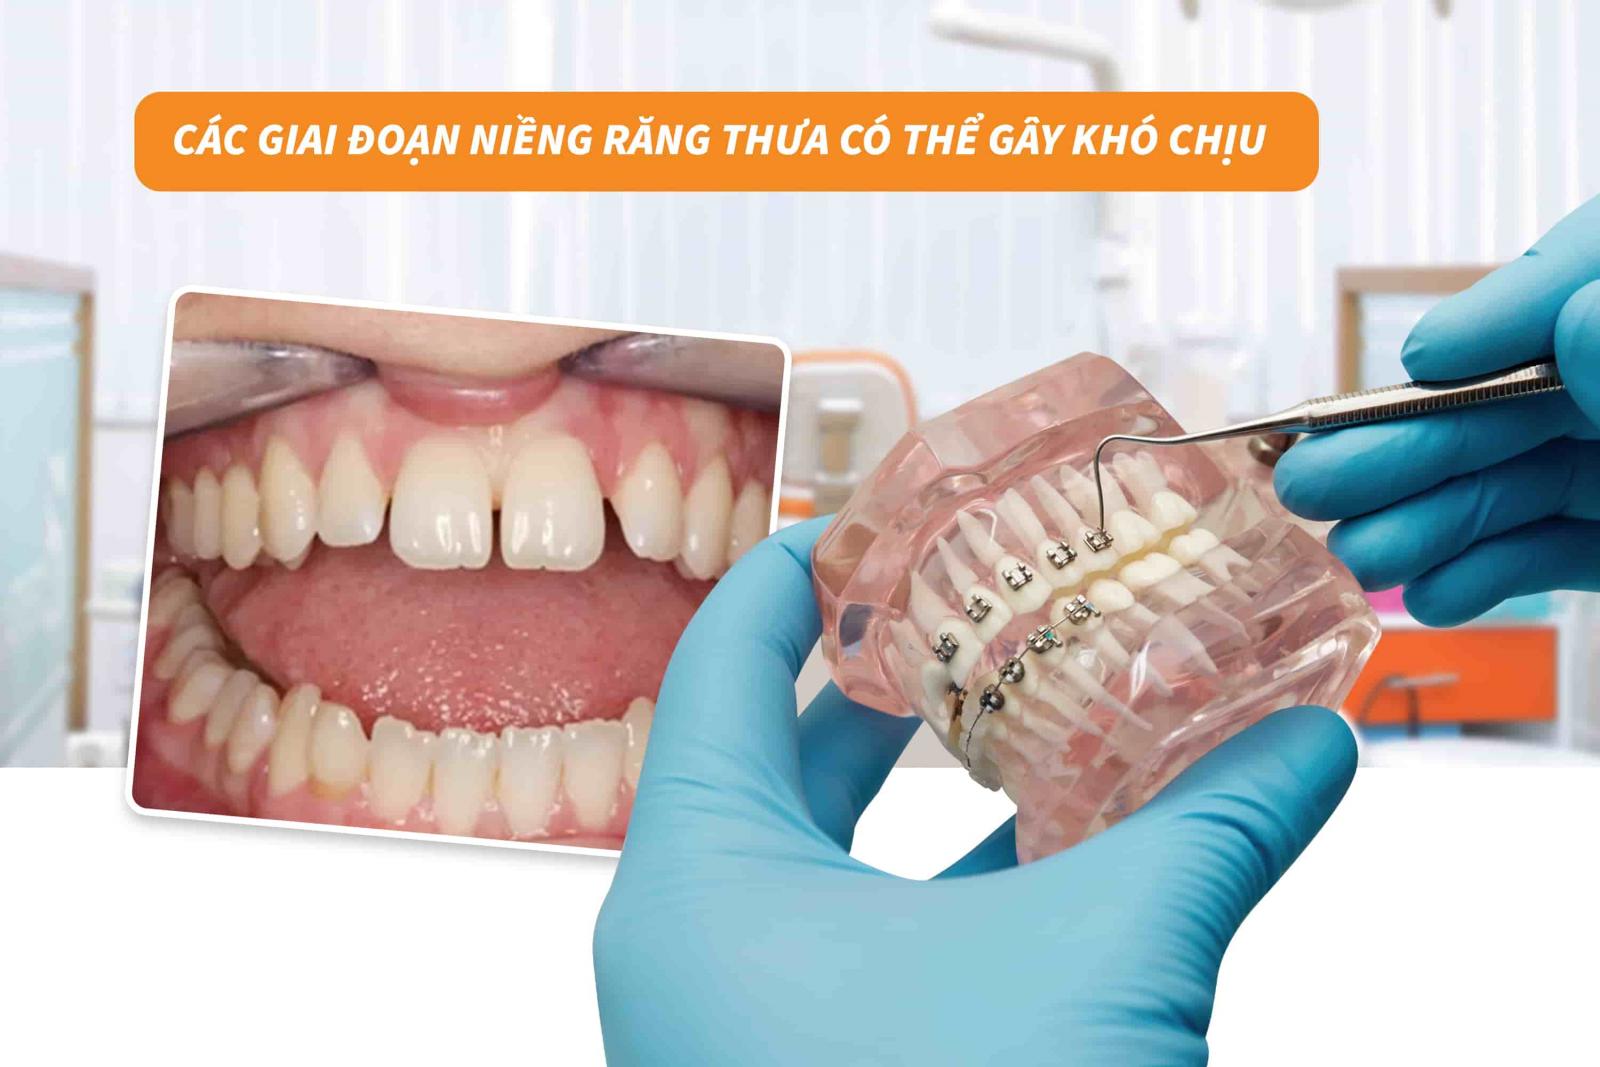 Các giai đoạn niềng răng thưa có thể gây khó chịu 